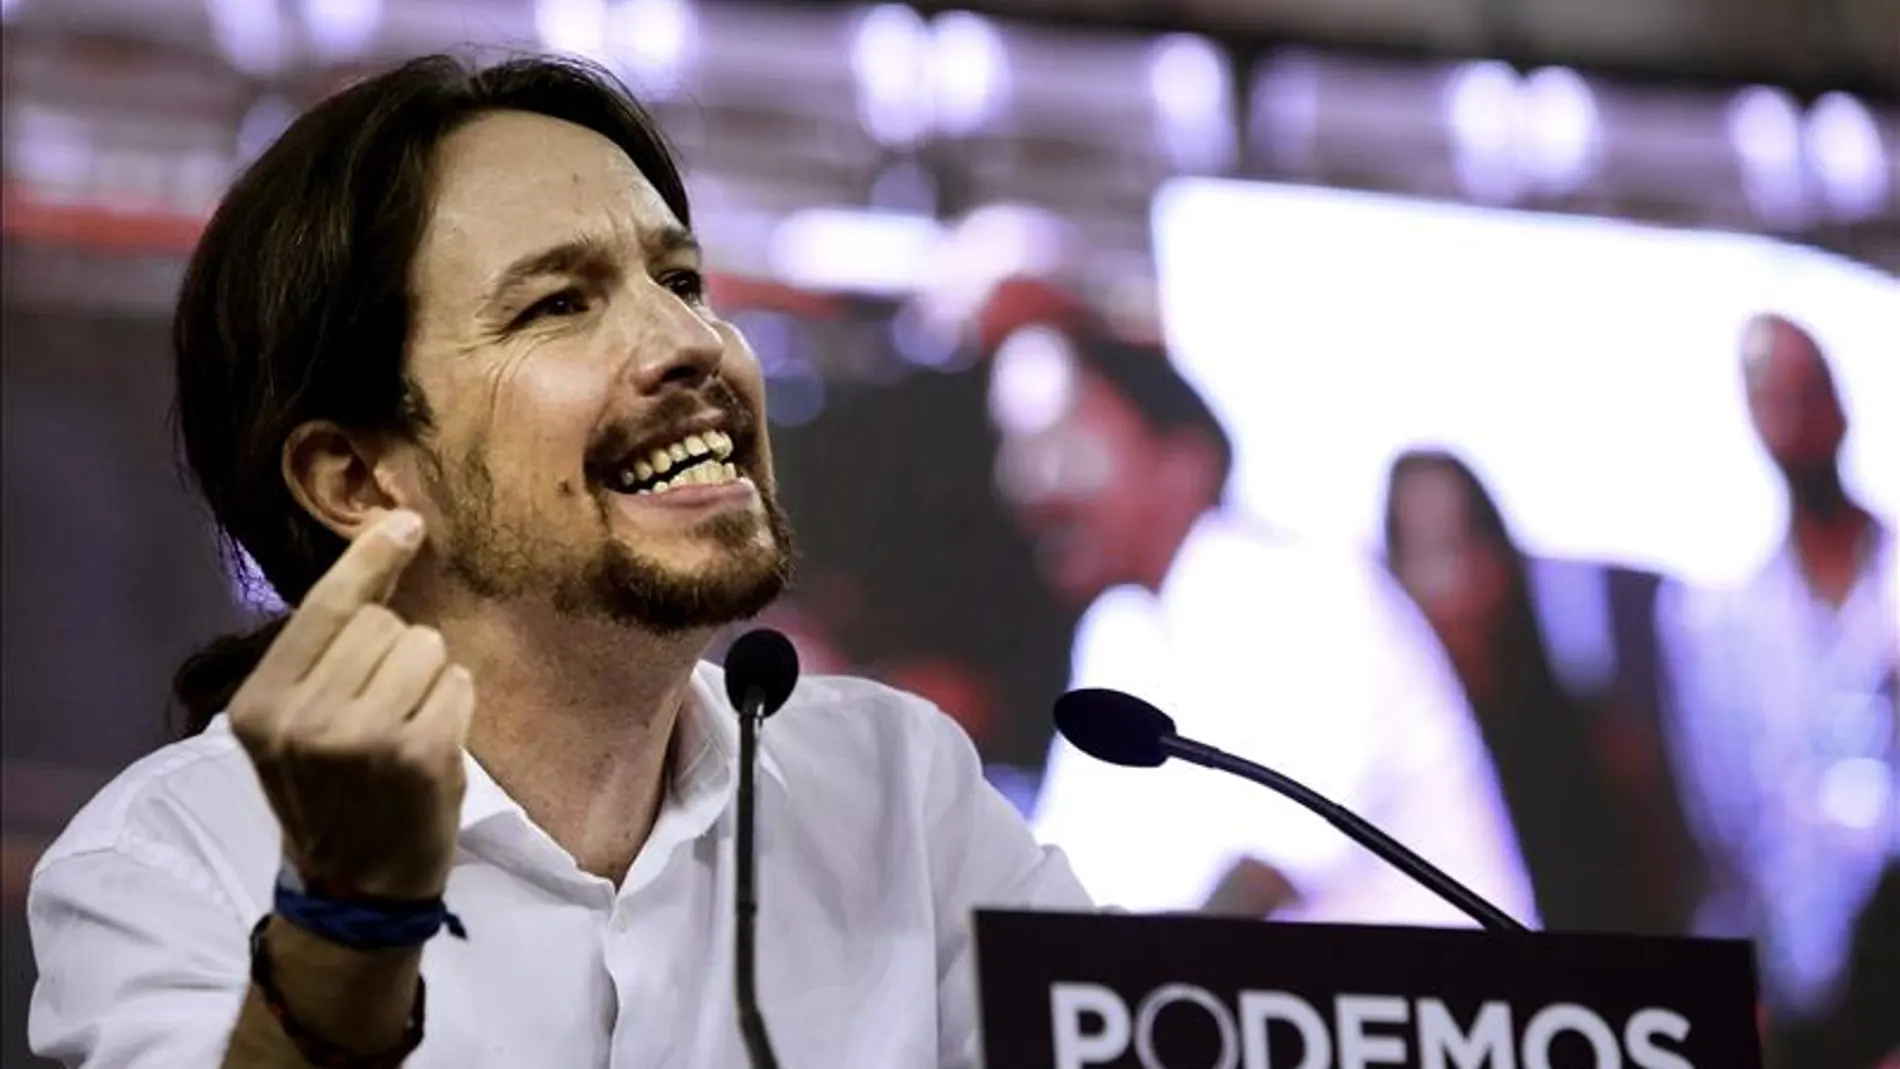 El líder de Podemos, Pablo Iglesias, interviene en la Asamblea Ciudadana "Sí Se Puede"